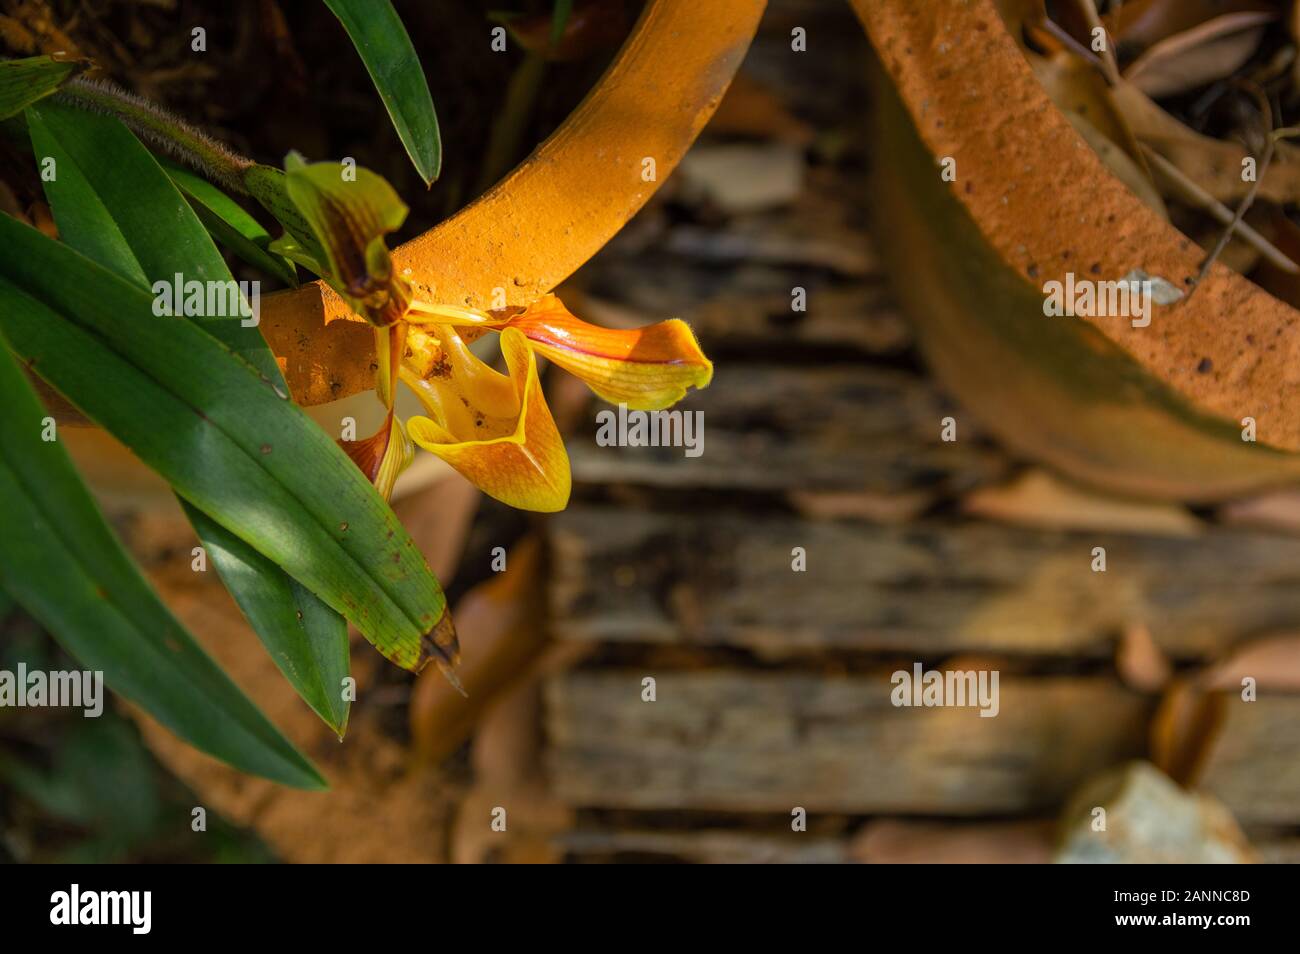 Bild der Venus Slipper (Paphiopedilum gratrixianum) Orchidee im Hintergrund Blumentopf - Ausgewählte konzentrieren Stockfoto